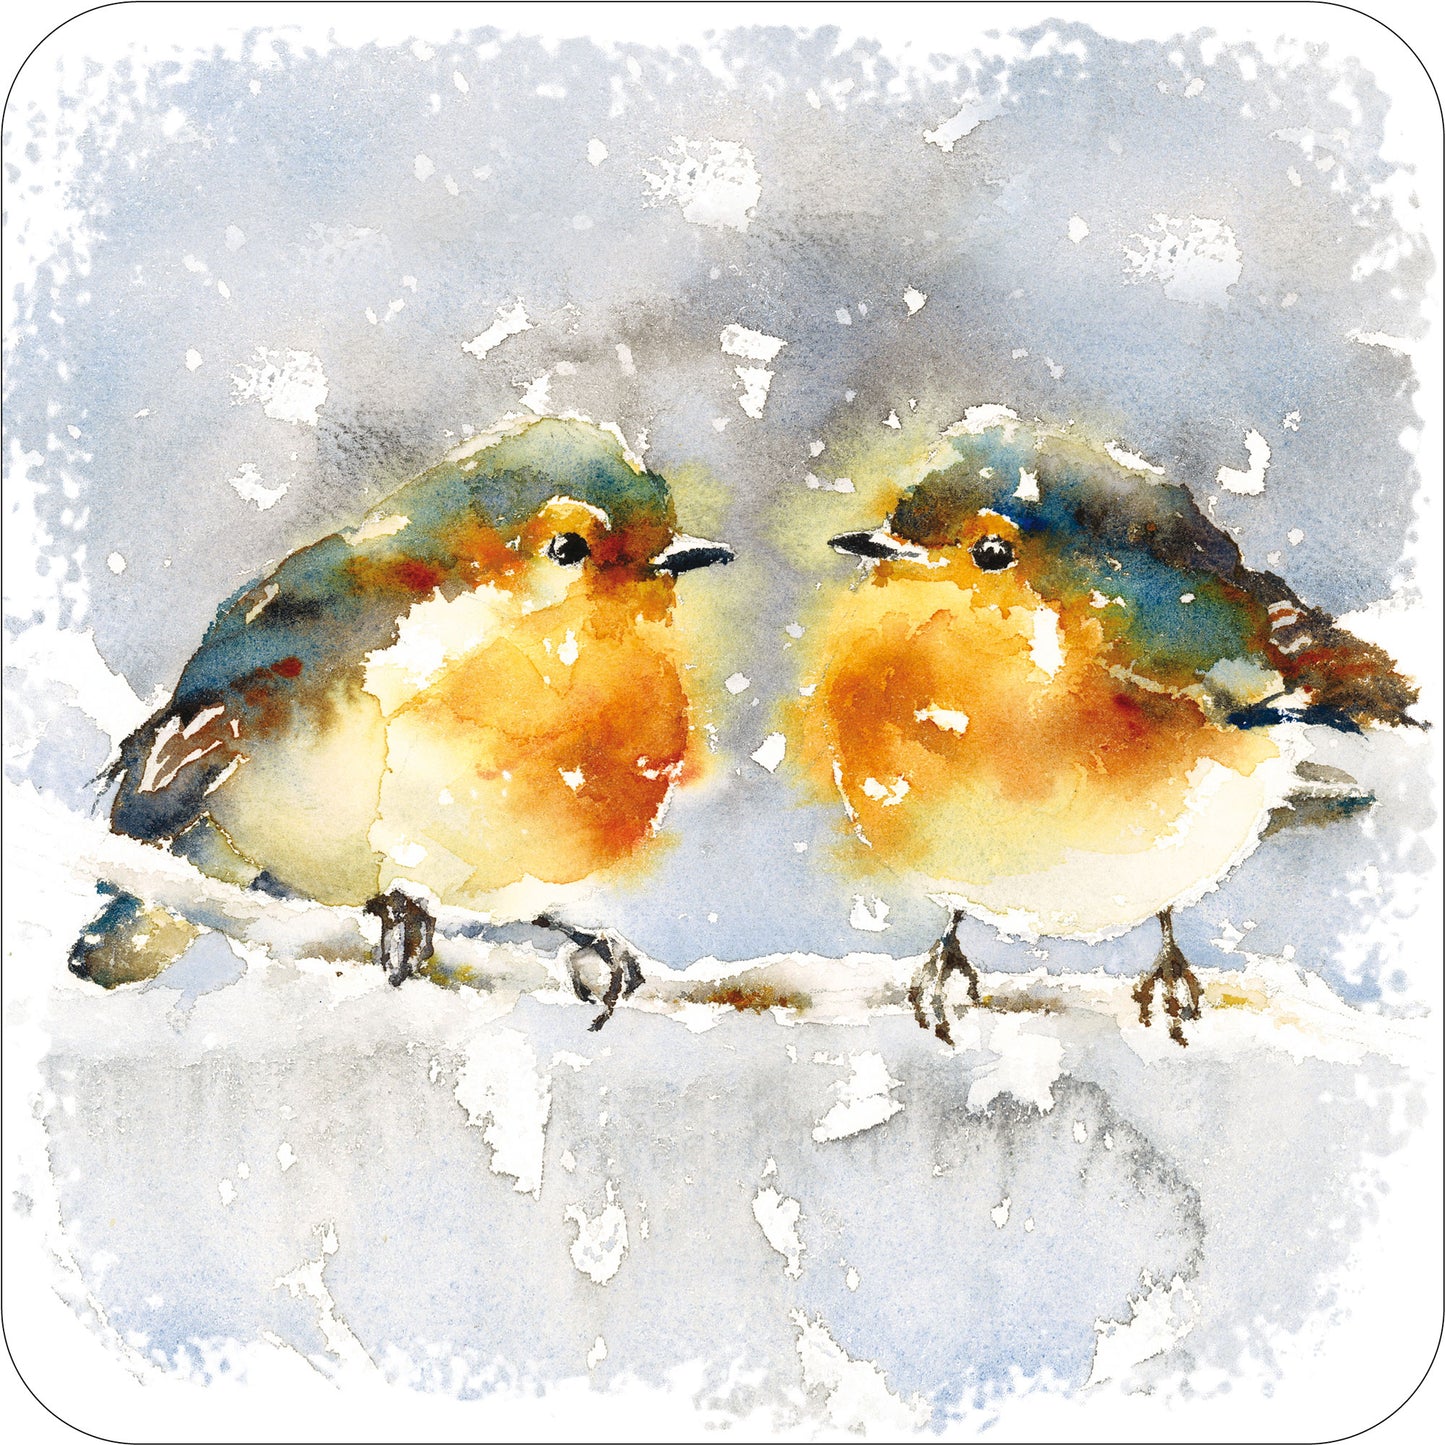 2 Robins Christmas Coaster - The Christian Gift Company